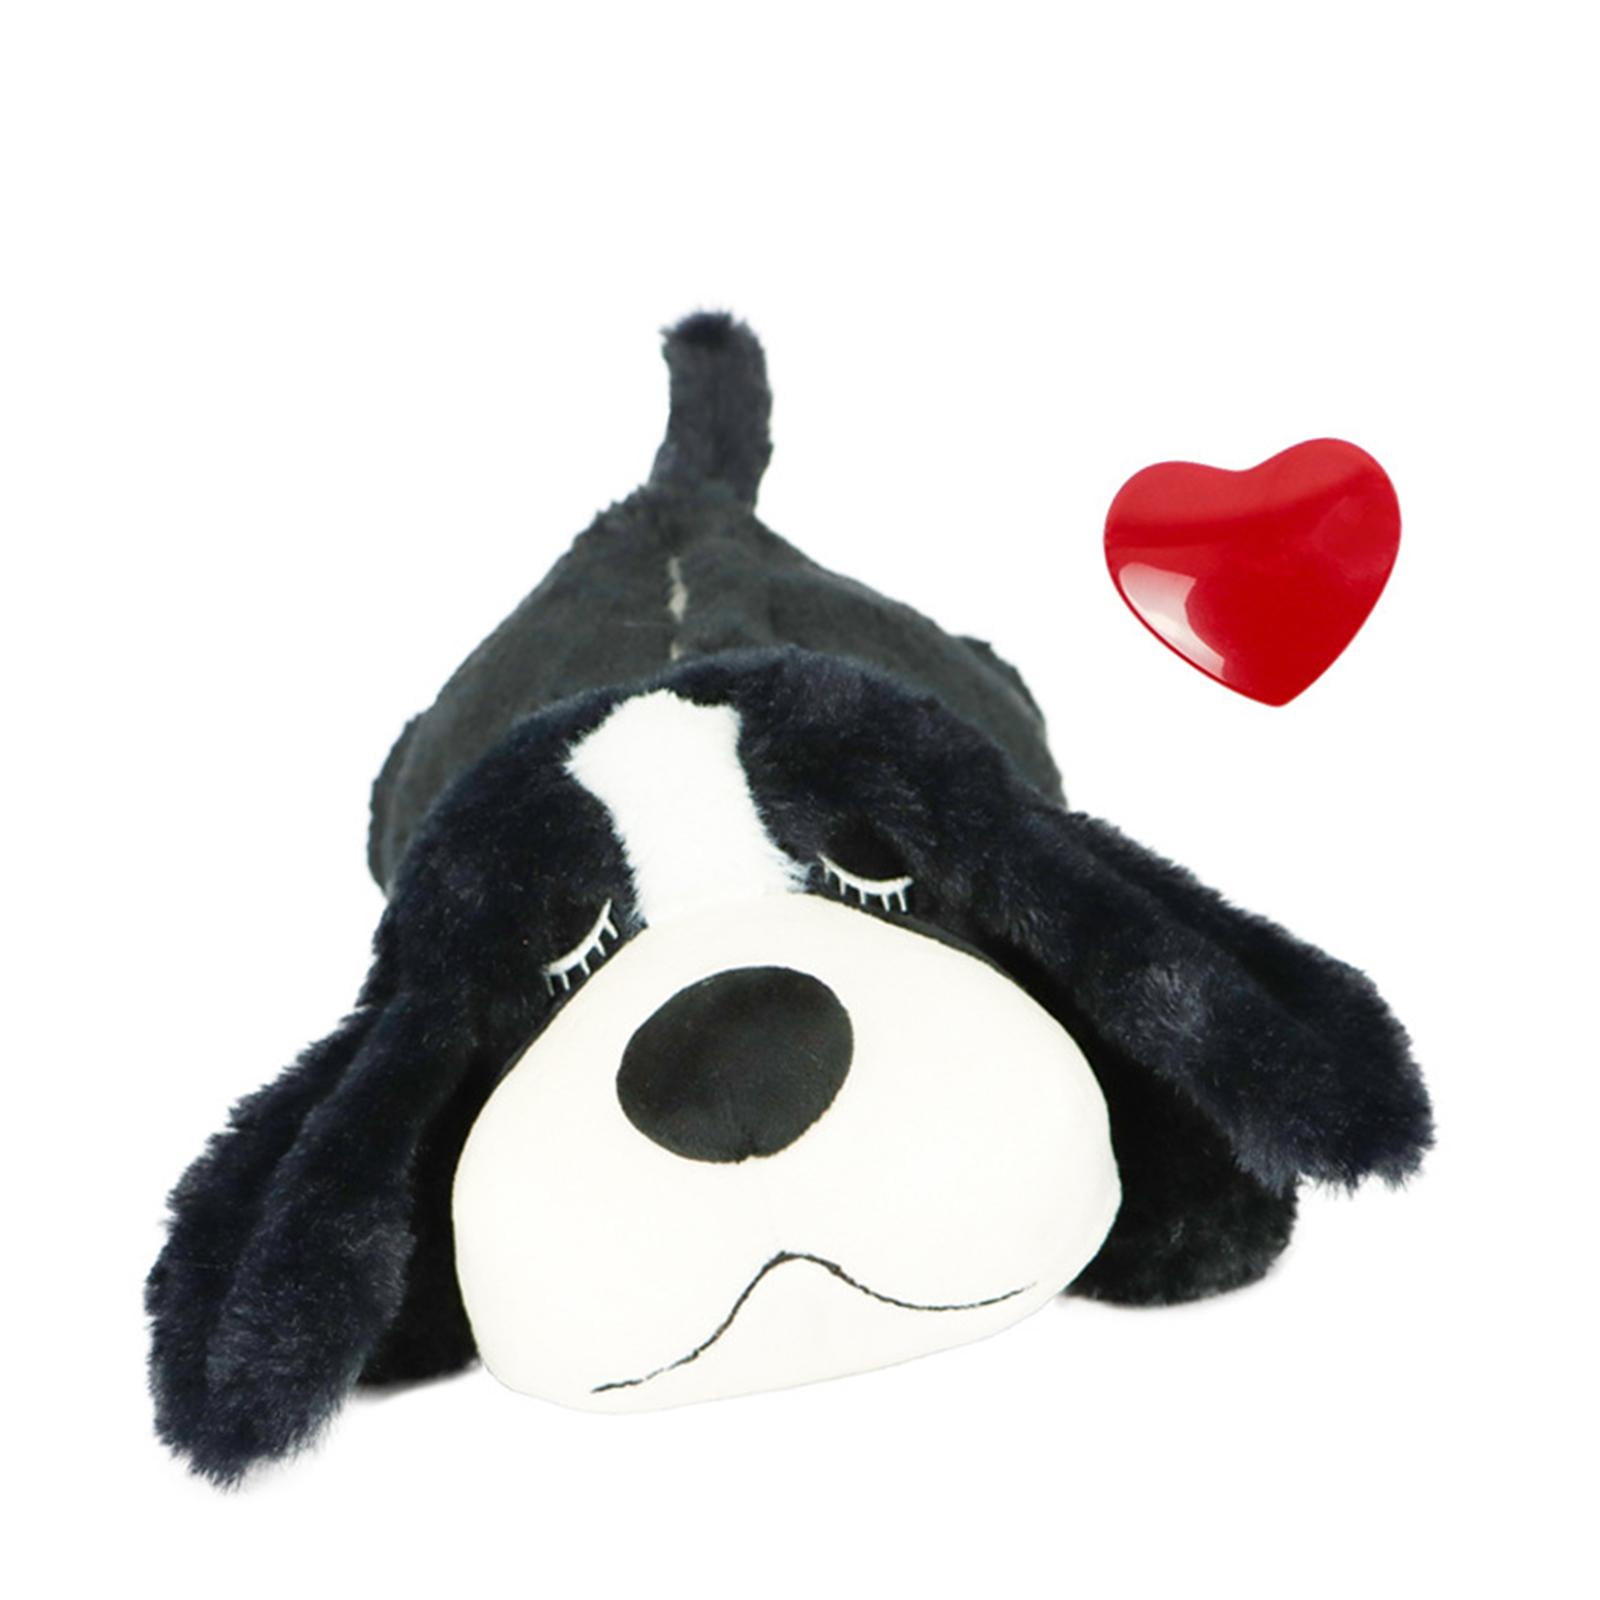 Puppy Heartbeat Toy Dog Stuffed